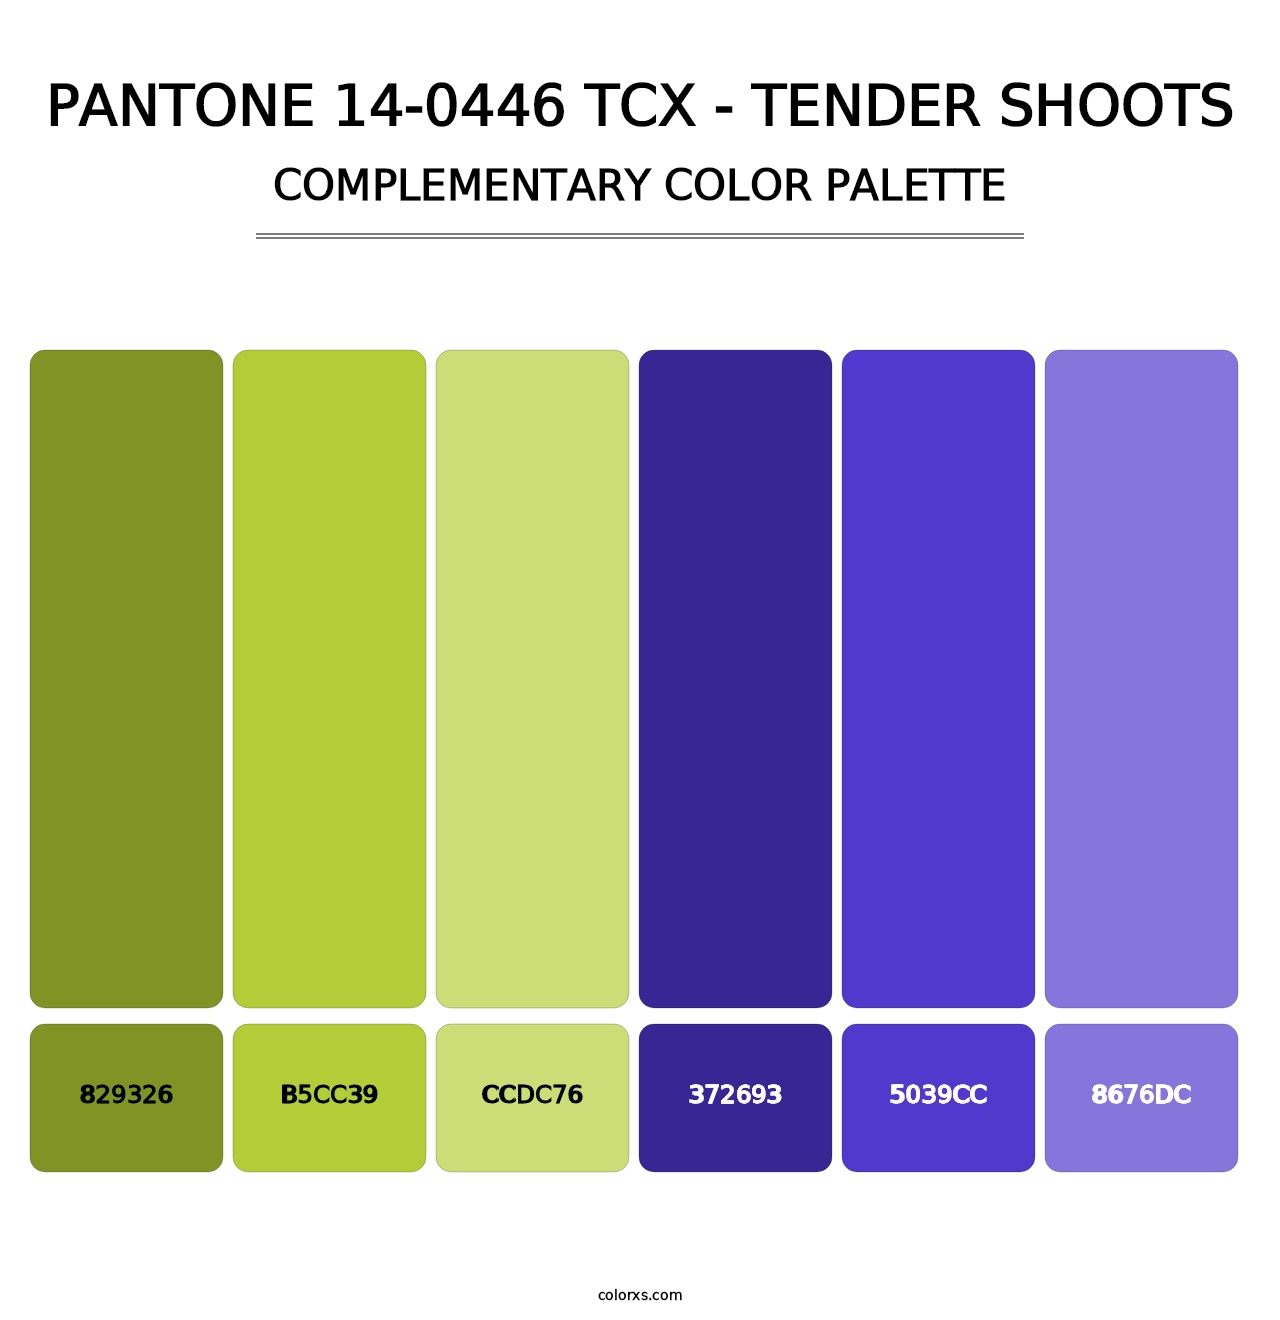 PANTONE 14-0446 TCX - Tender Shoots - Complementary Color Palette